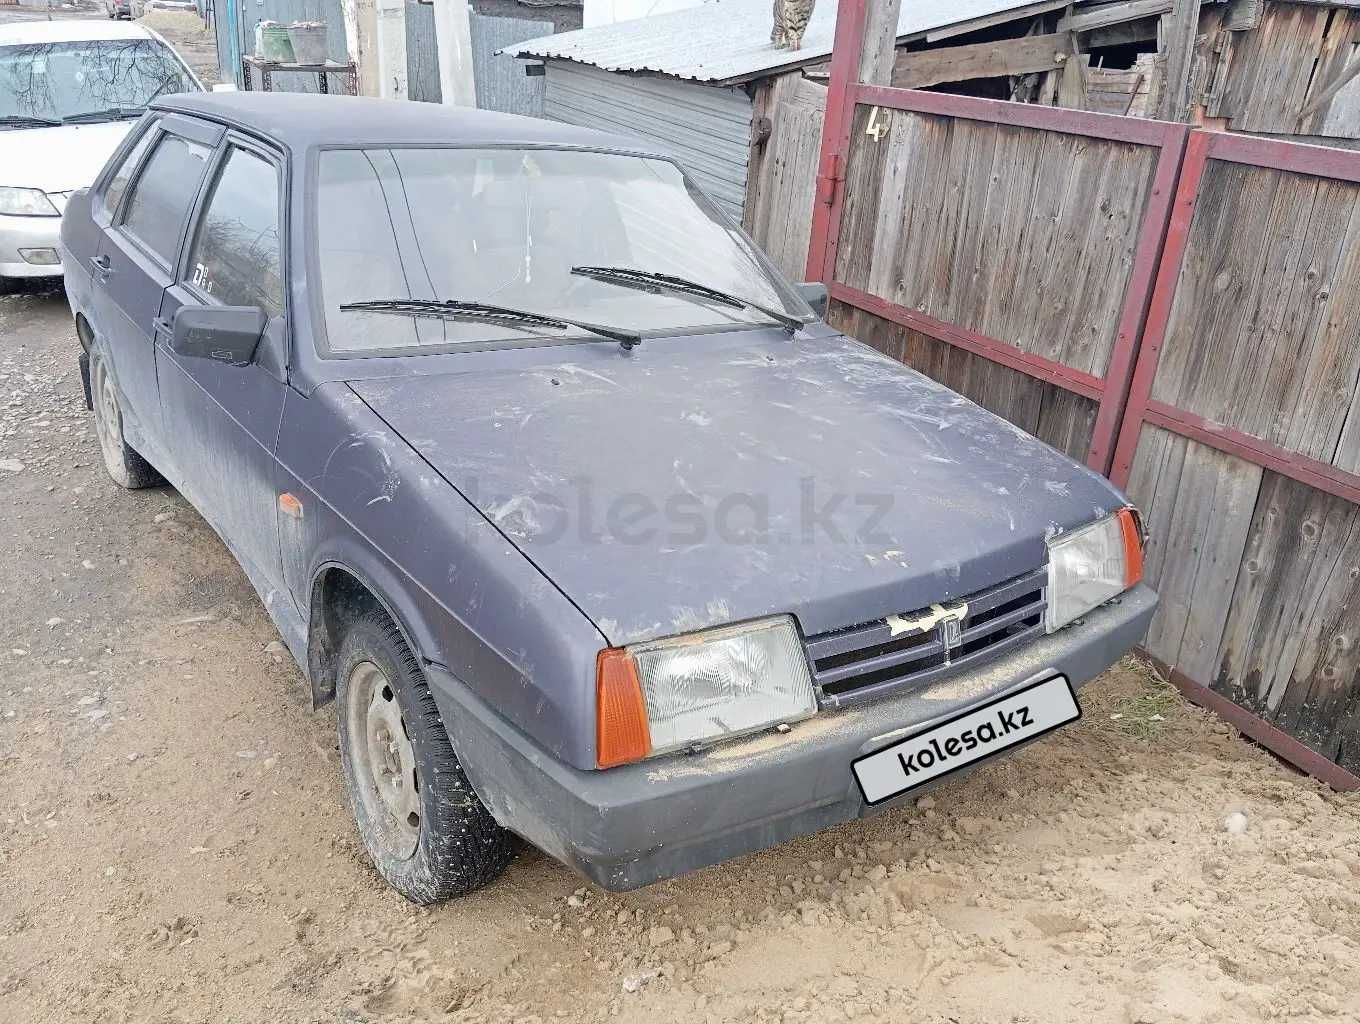 Продам автомобиль ВАЗ (Lada) 21099